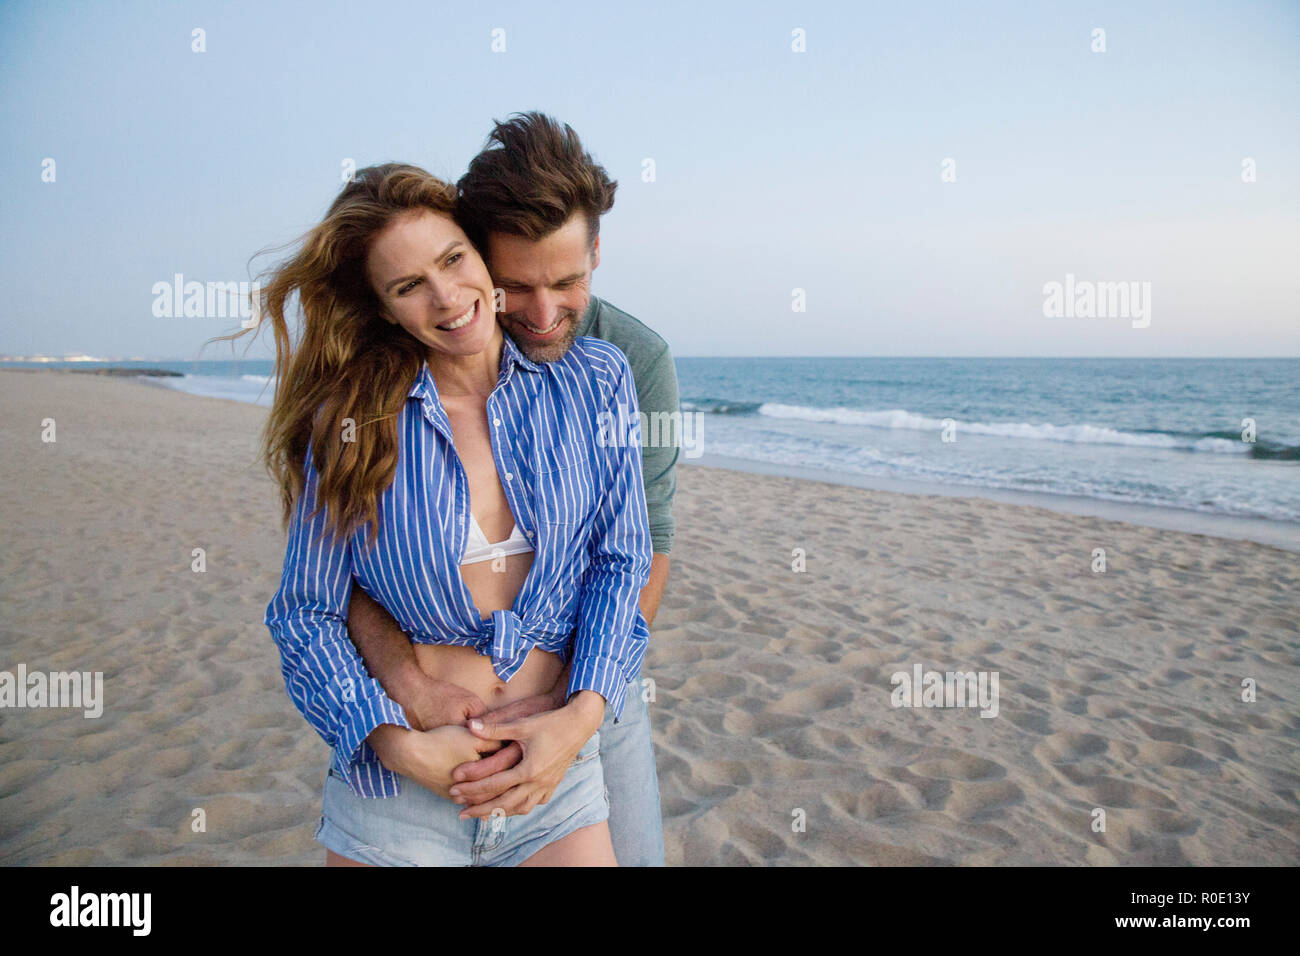 El hombre abrazando a la mujer desde atrás en la playa Foto de stock